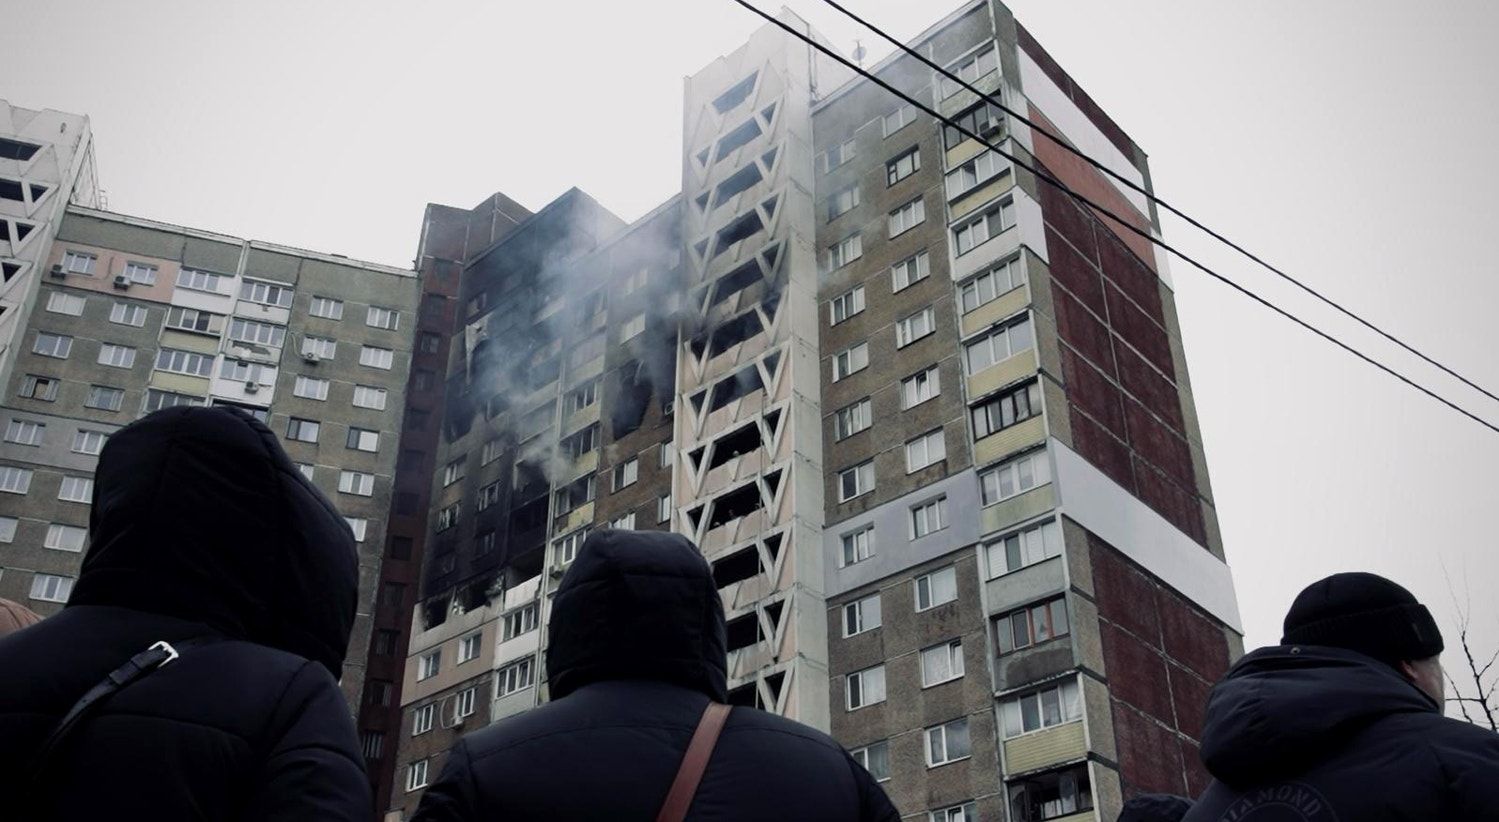  Pr&eacute;dio bombardeado na regi&atilde;o de Kiev | David Ara&uacute;jo - RTP 